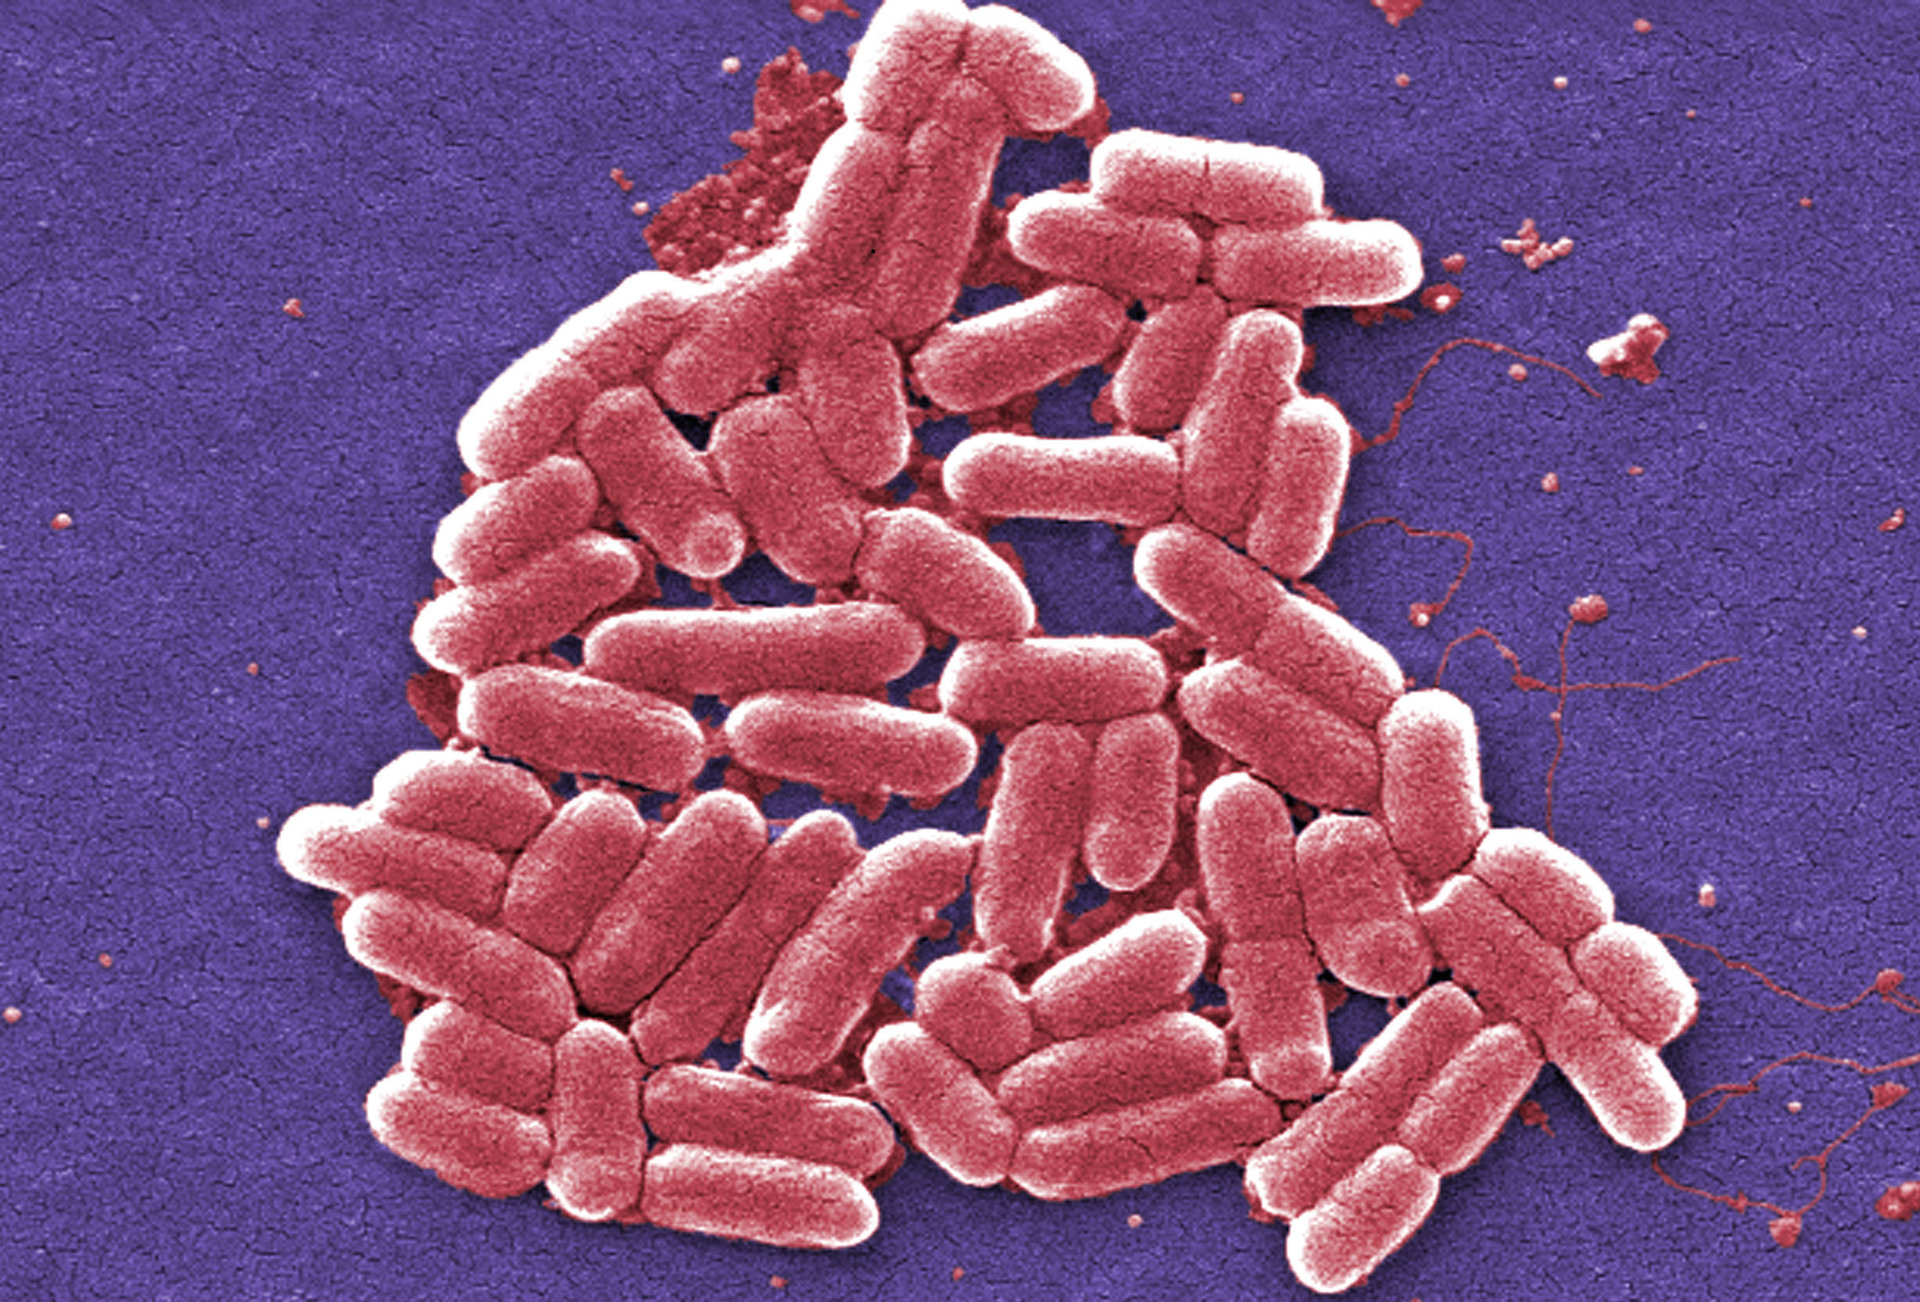 Τα υπερμικρόβια: Η «αθόρυβη πανδημία» που σκοτώνει εκατομμύρια ανθρώπους κάθε χρόνο-1